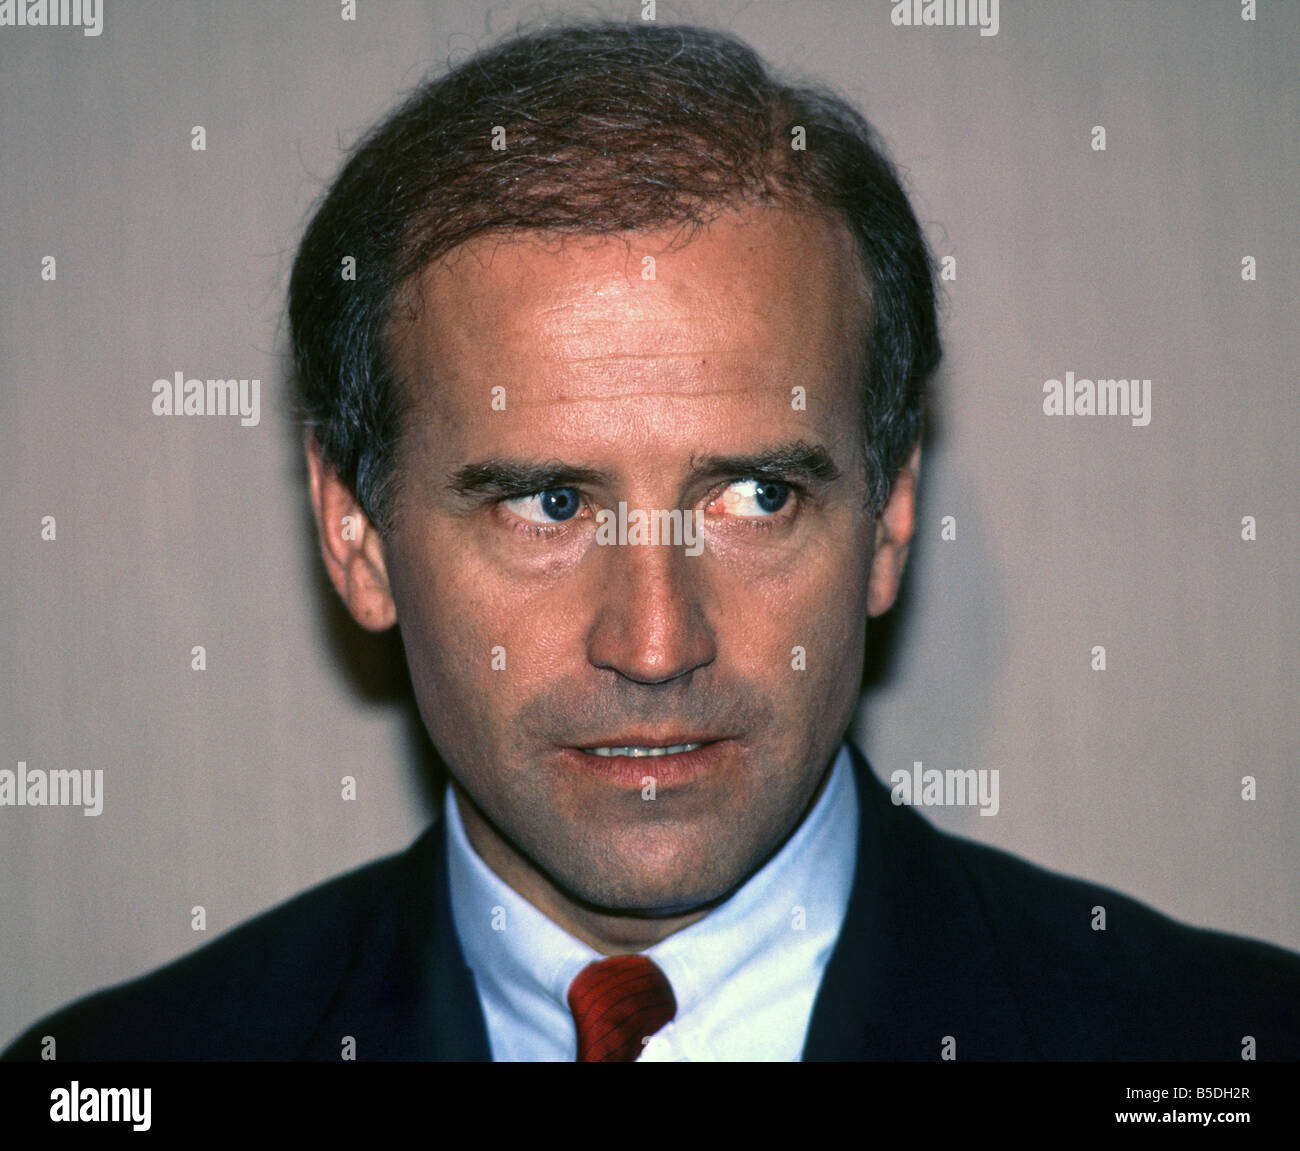 US Senator from Delaware Joseph Biden campaigns for Democratic Presidential nomination in 1987 Stock Photo